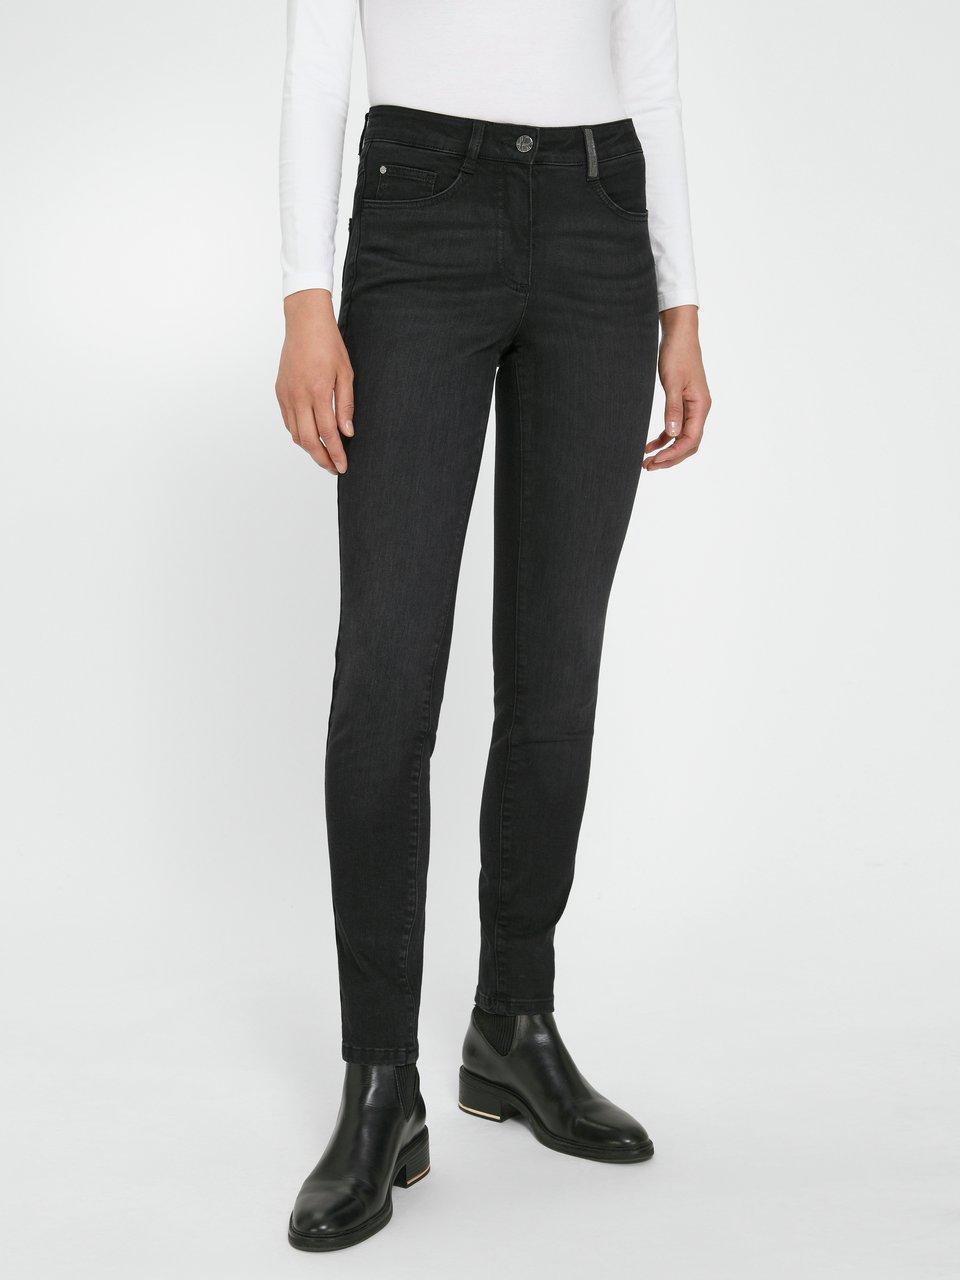 BASLER Jeans model - Black